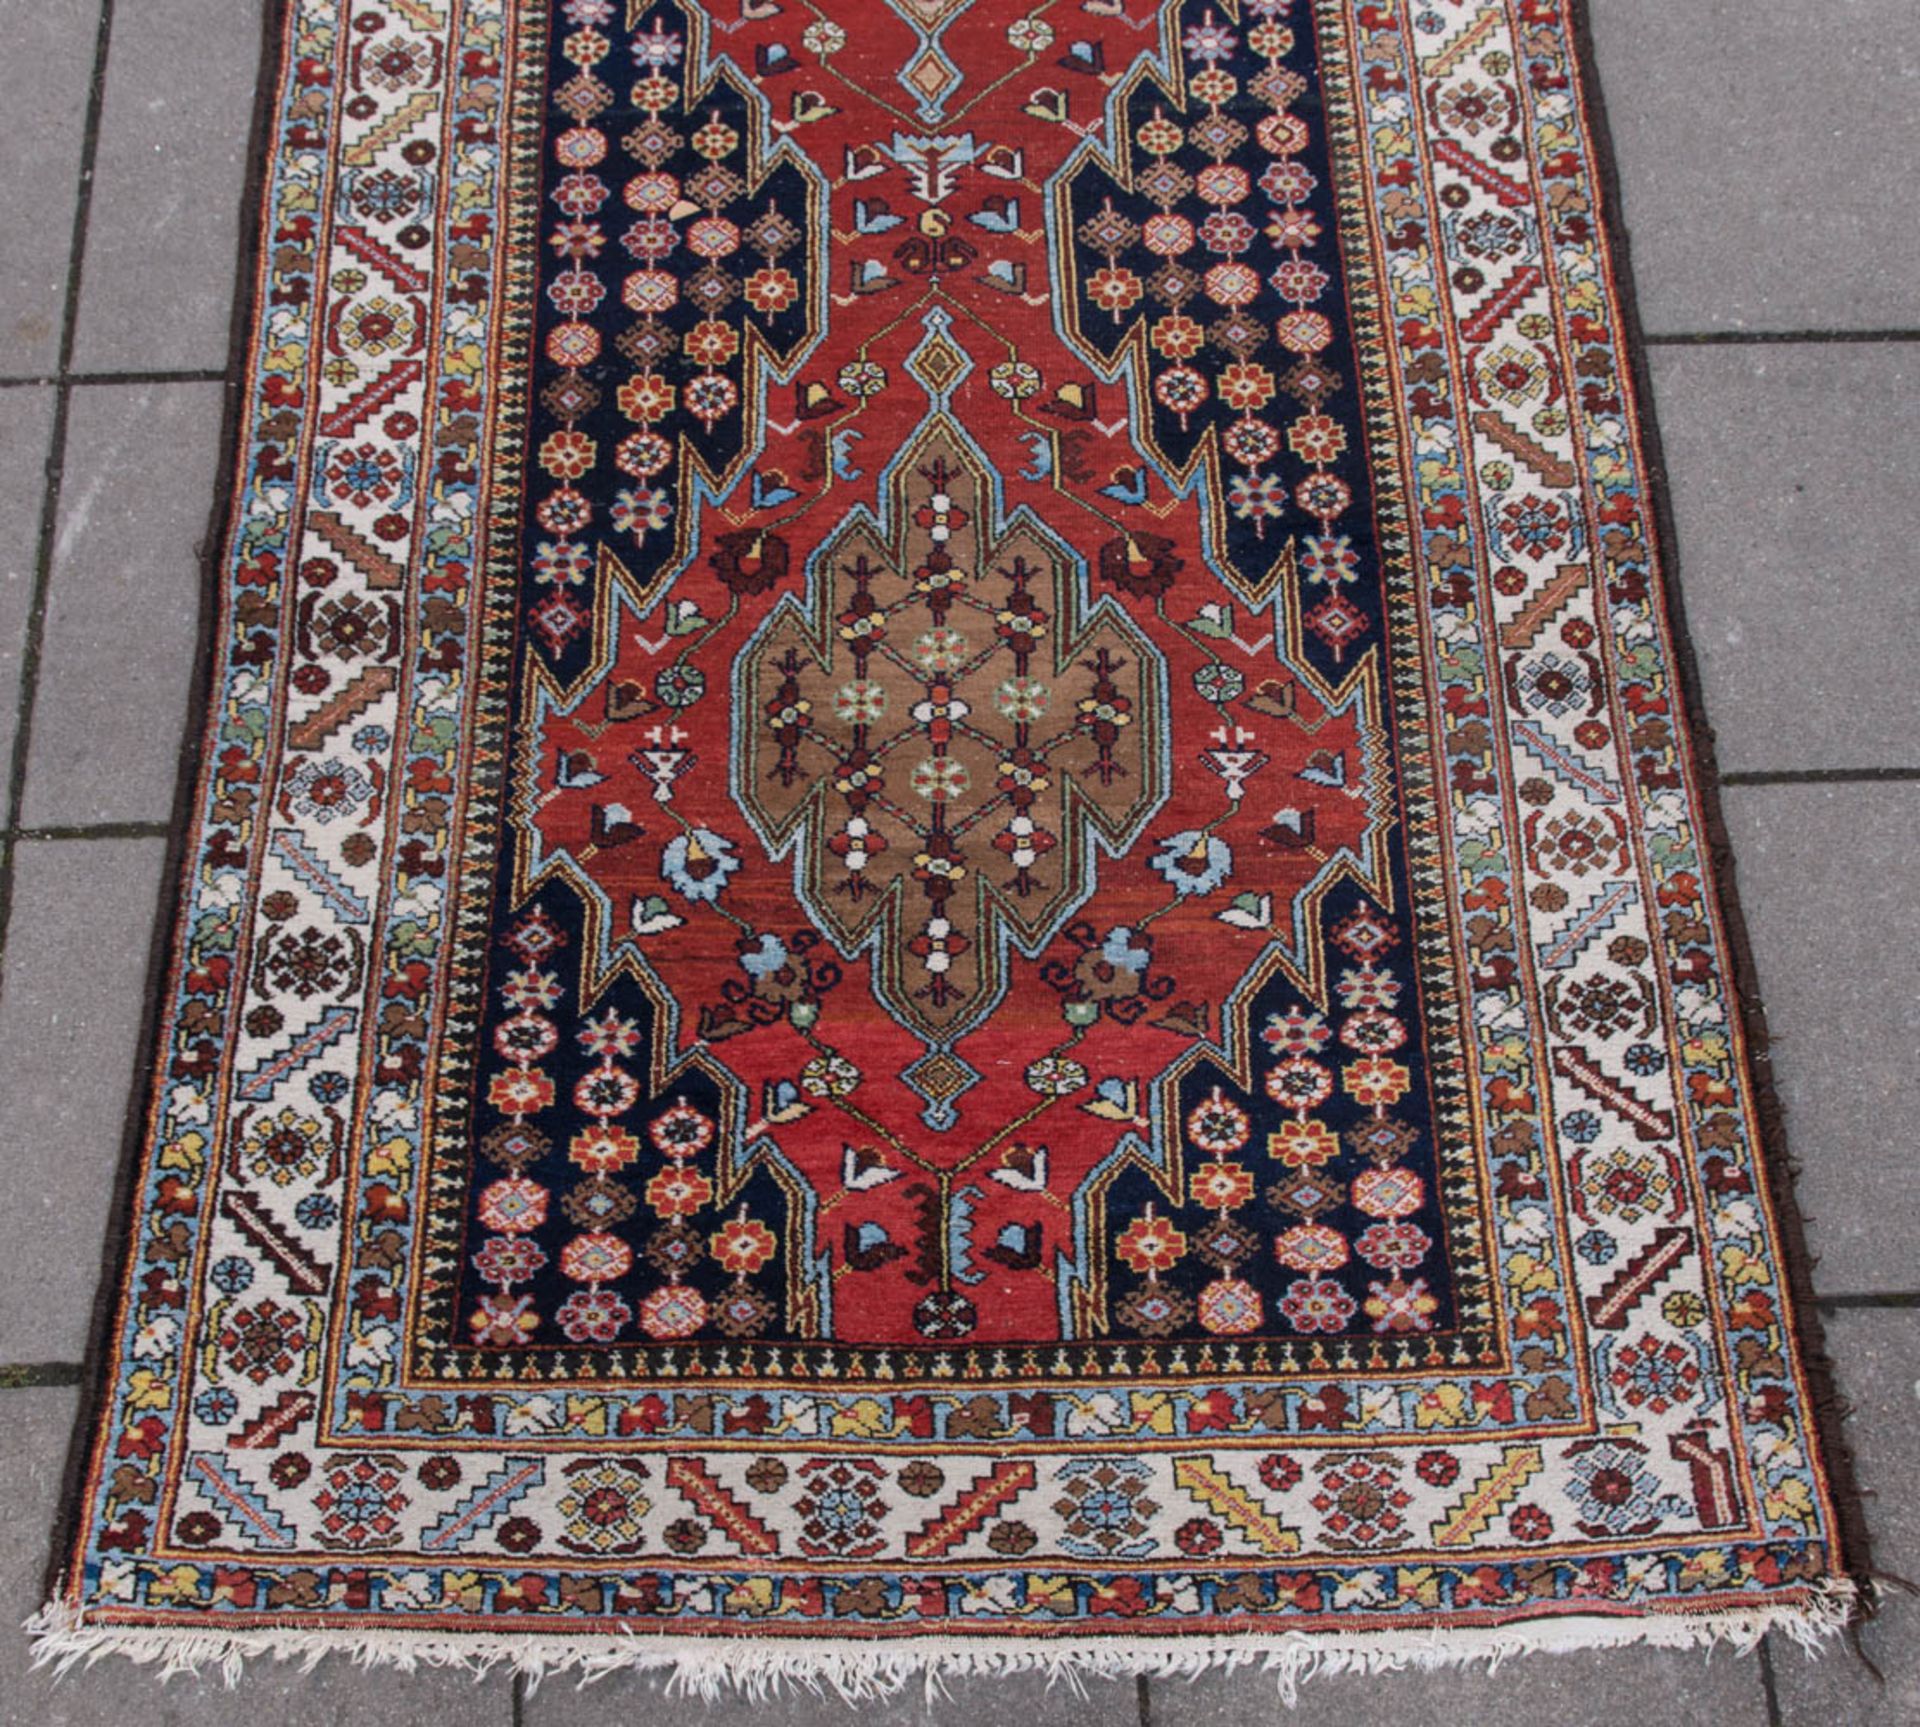 Läufer Teppich, Baumwolle.Ornamenrale und florale Muster.420 x 150 cm. - Image 3 of 8